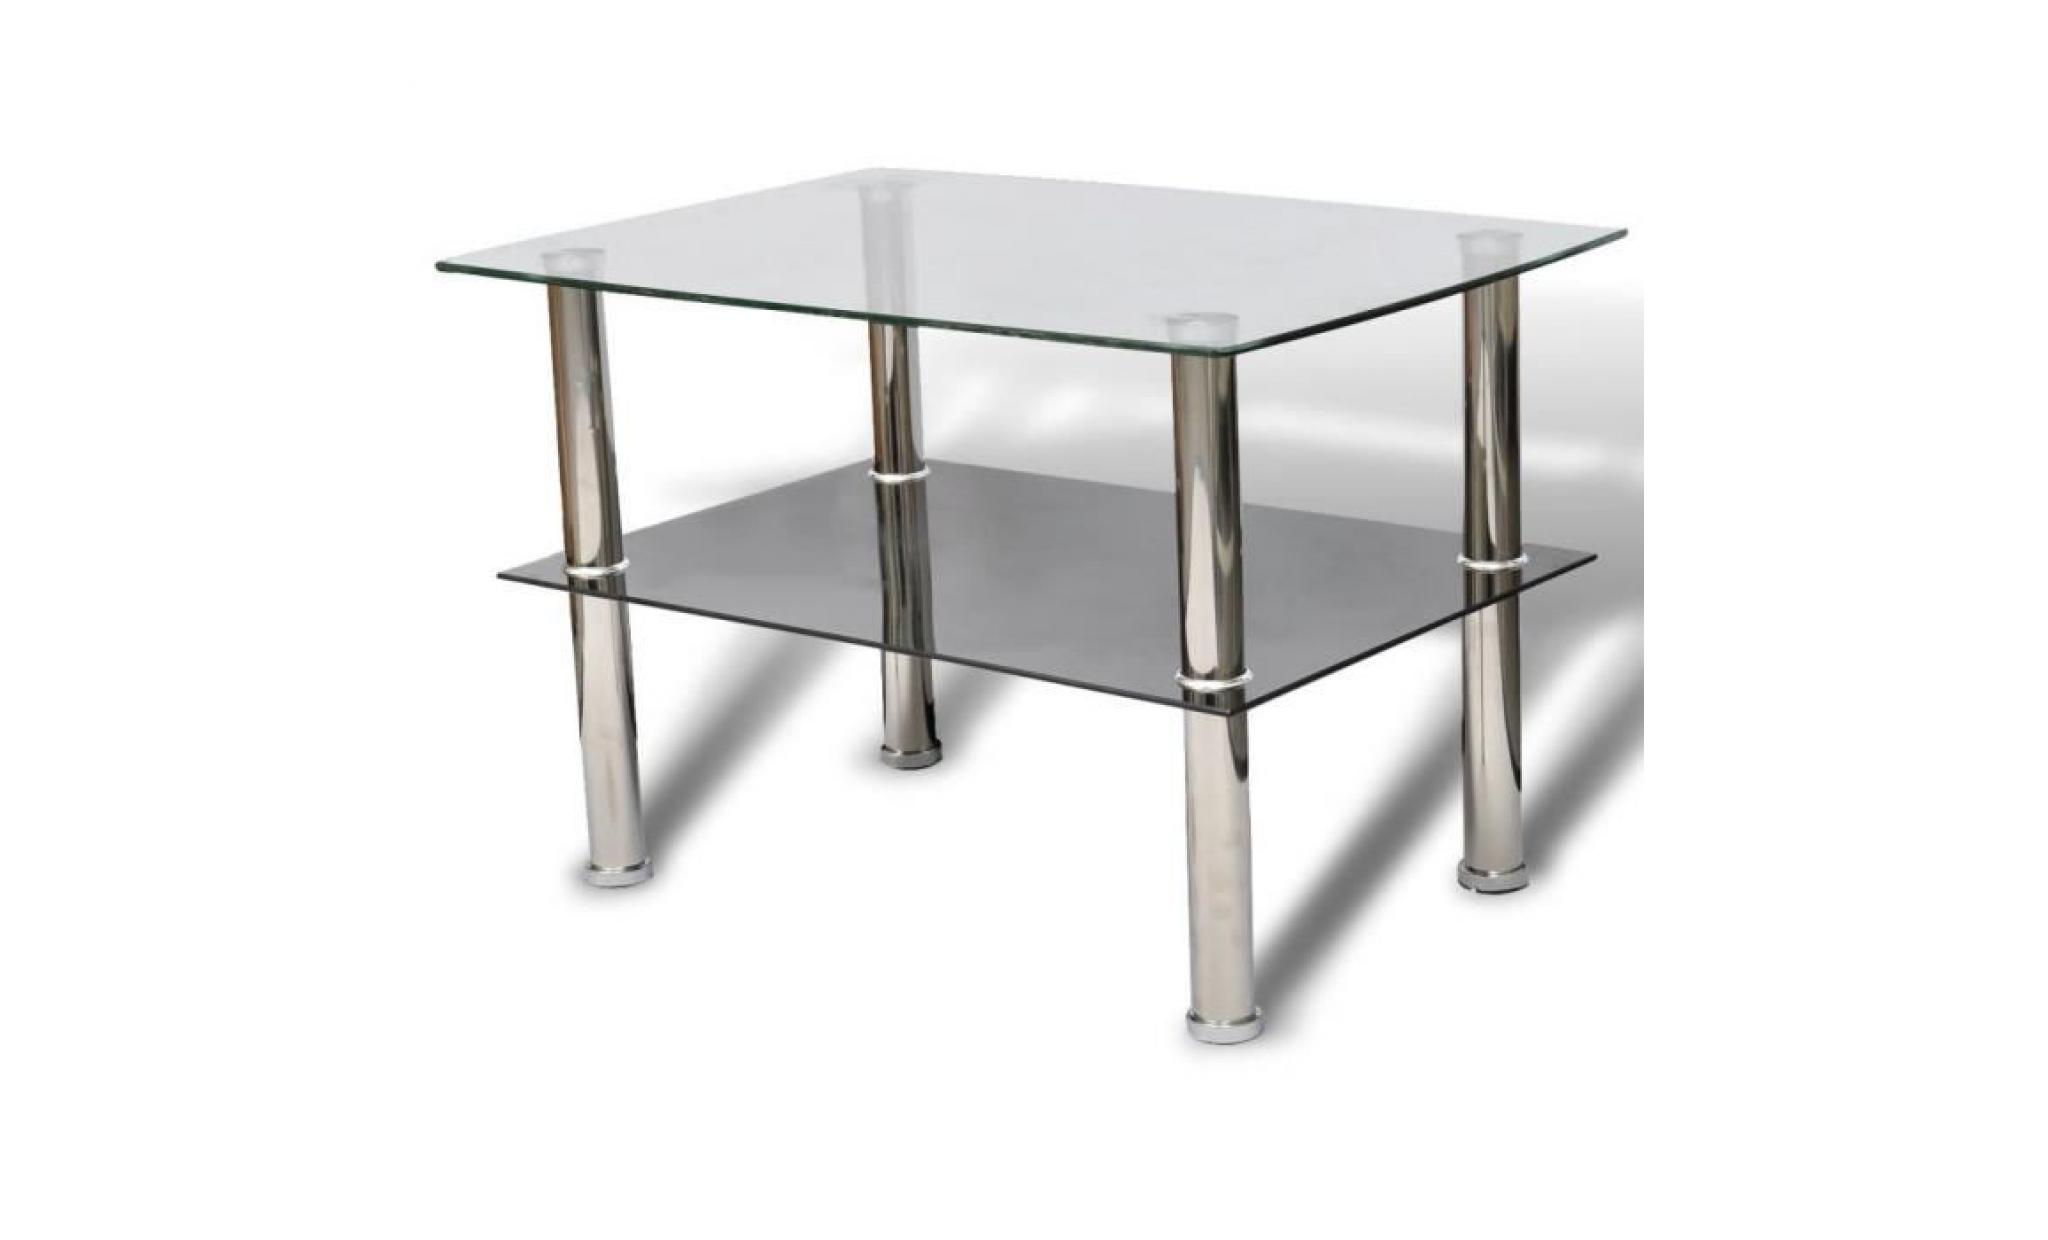 r30 cette table basse / table d'appoint rectangulaire presente un design a deux niveaux complete par des pieds en acier